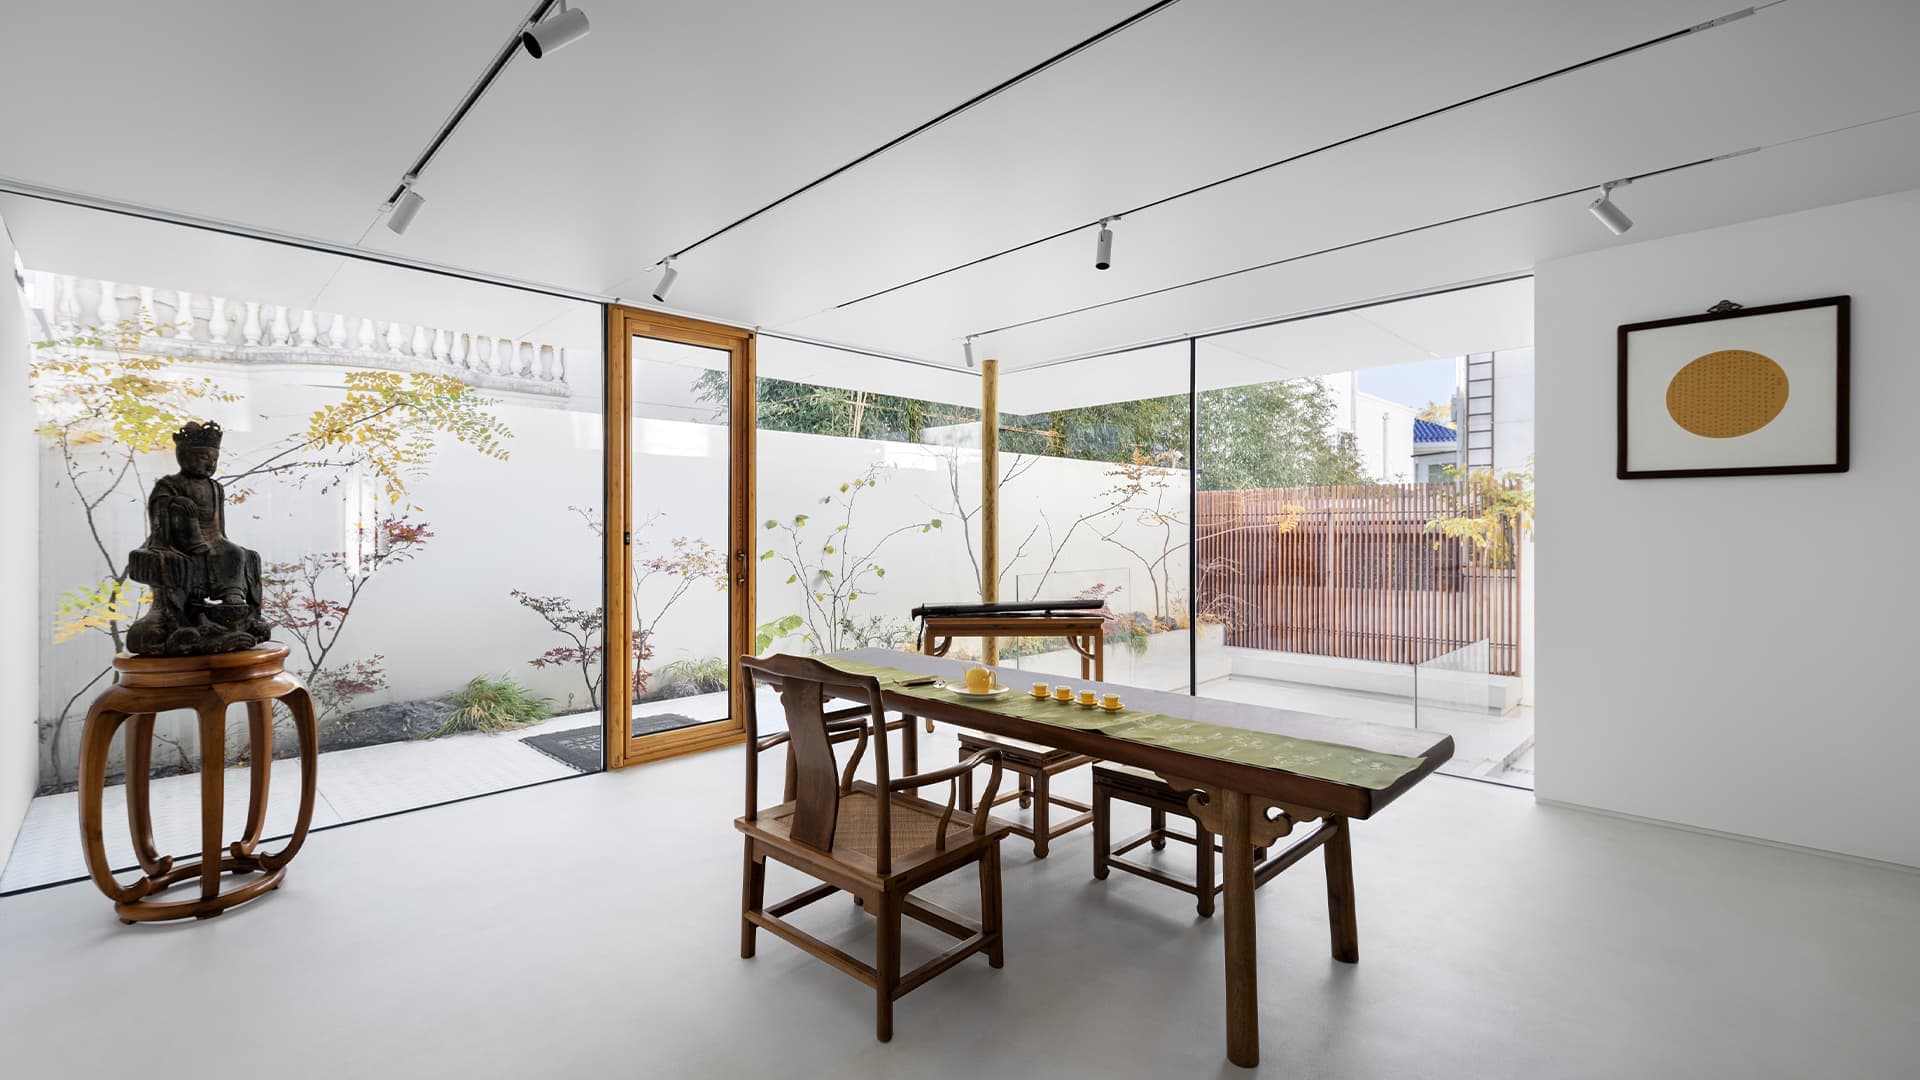 Традиции и современность в интерьере китайского загородного дома — проект студии KiKi ARCHi